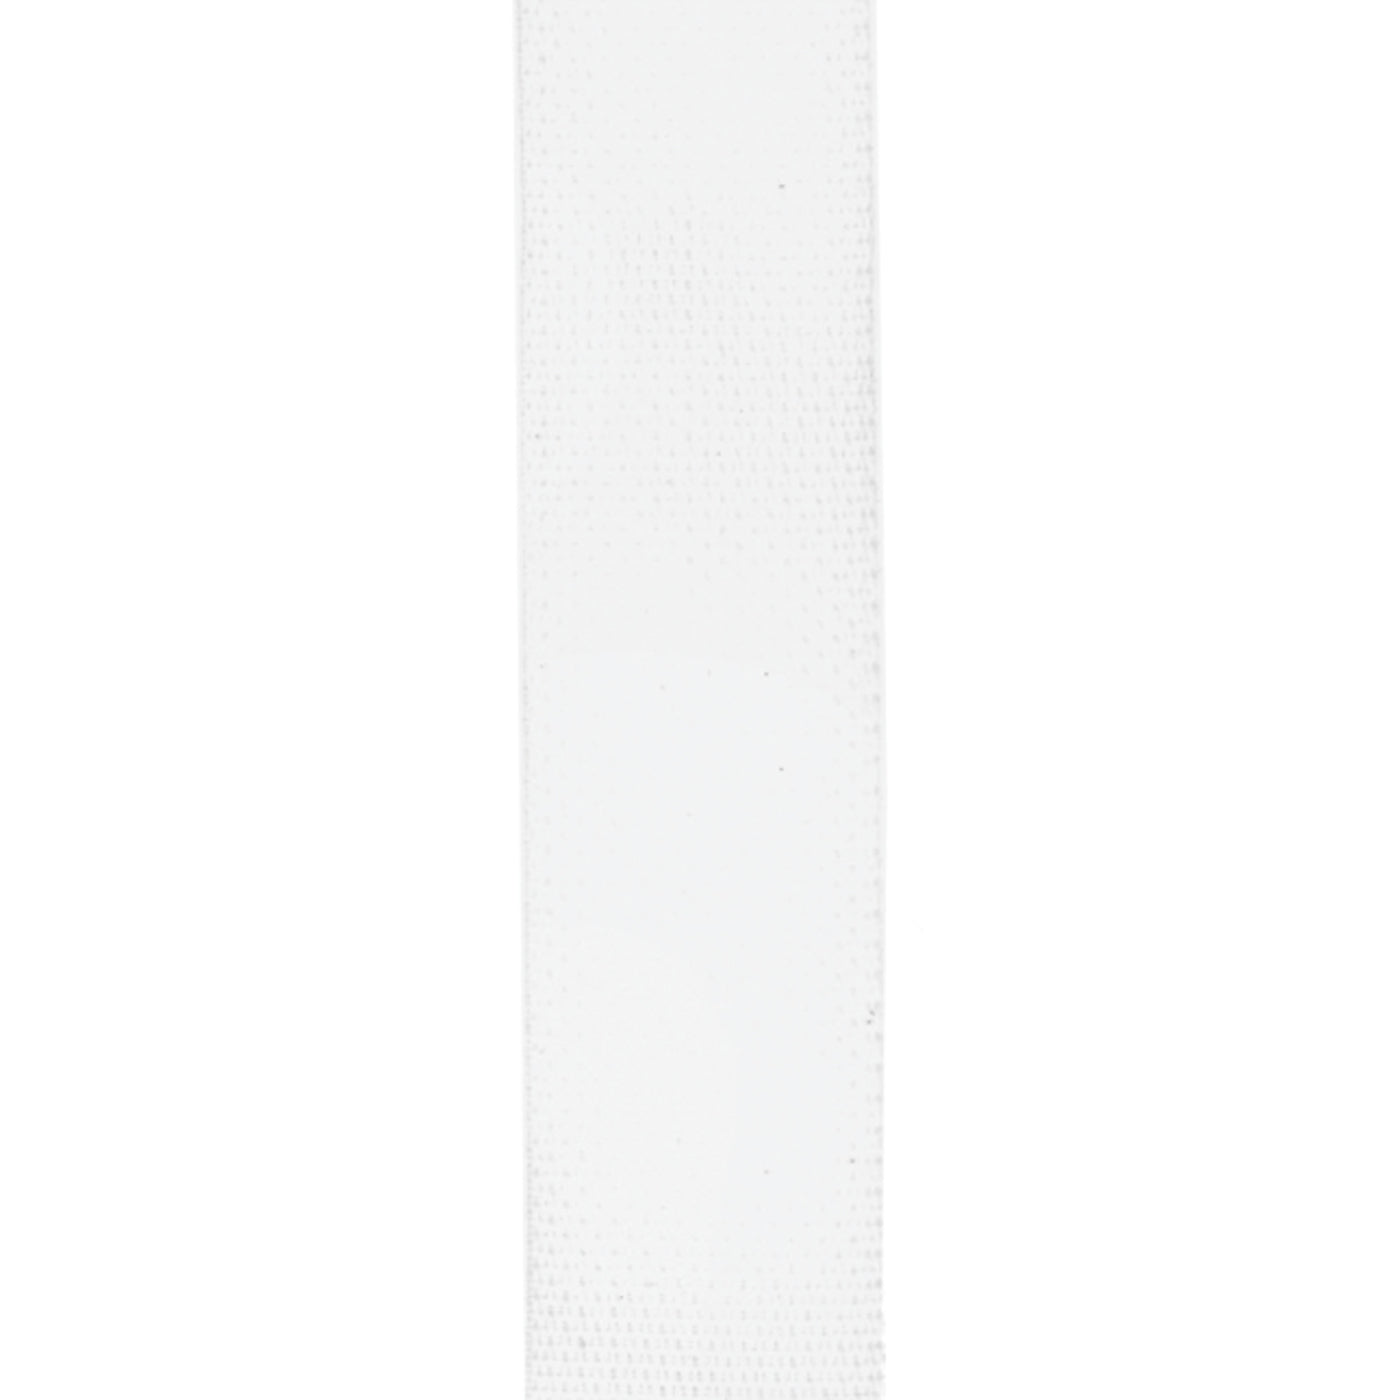 D'Addario Polypropylene Guitar Strap, White (PWS108)